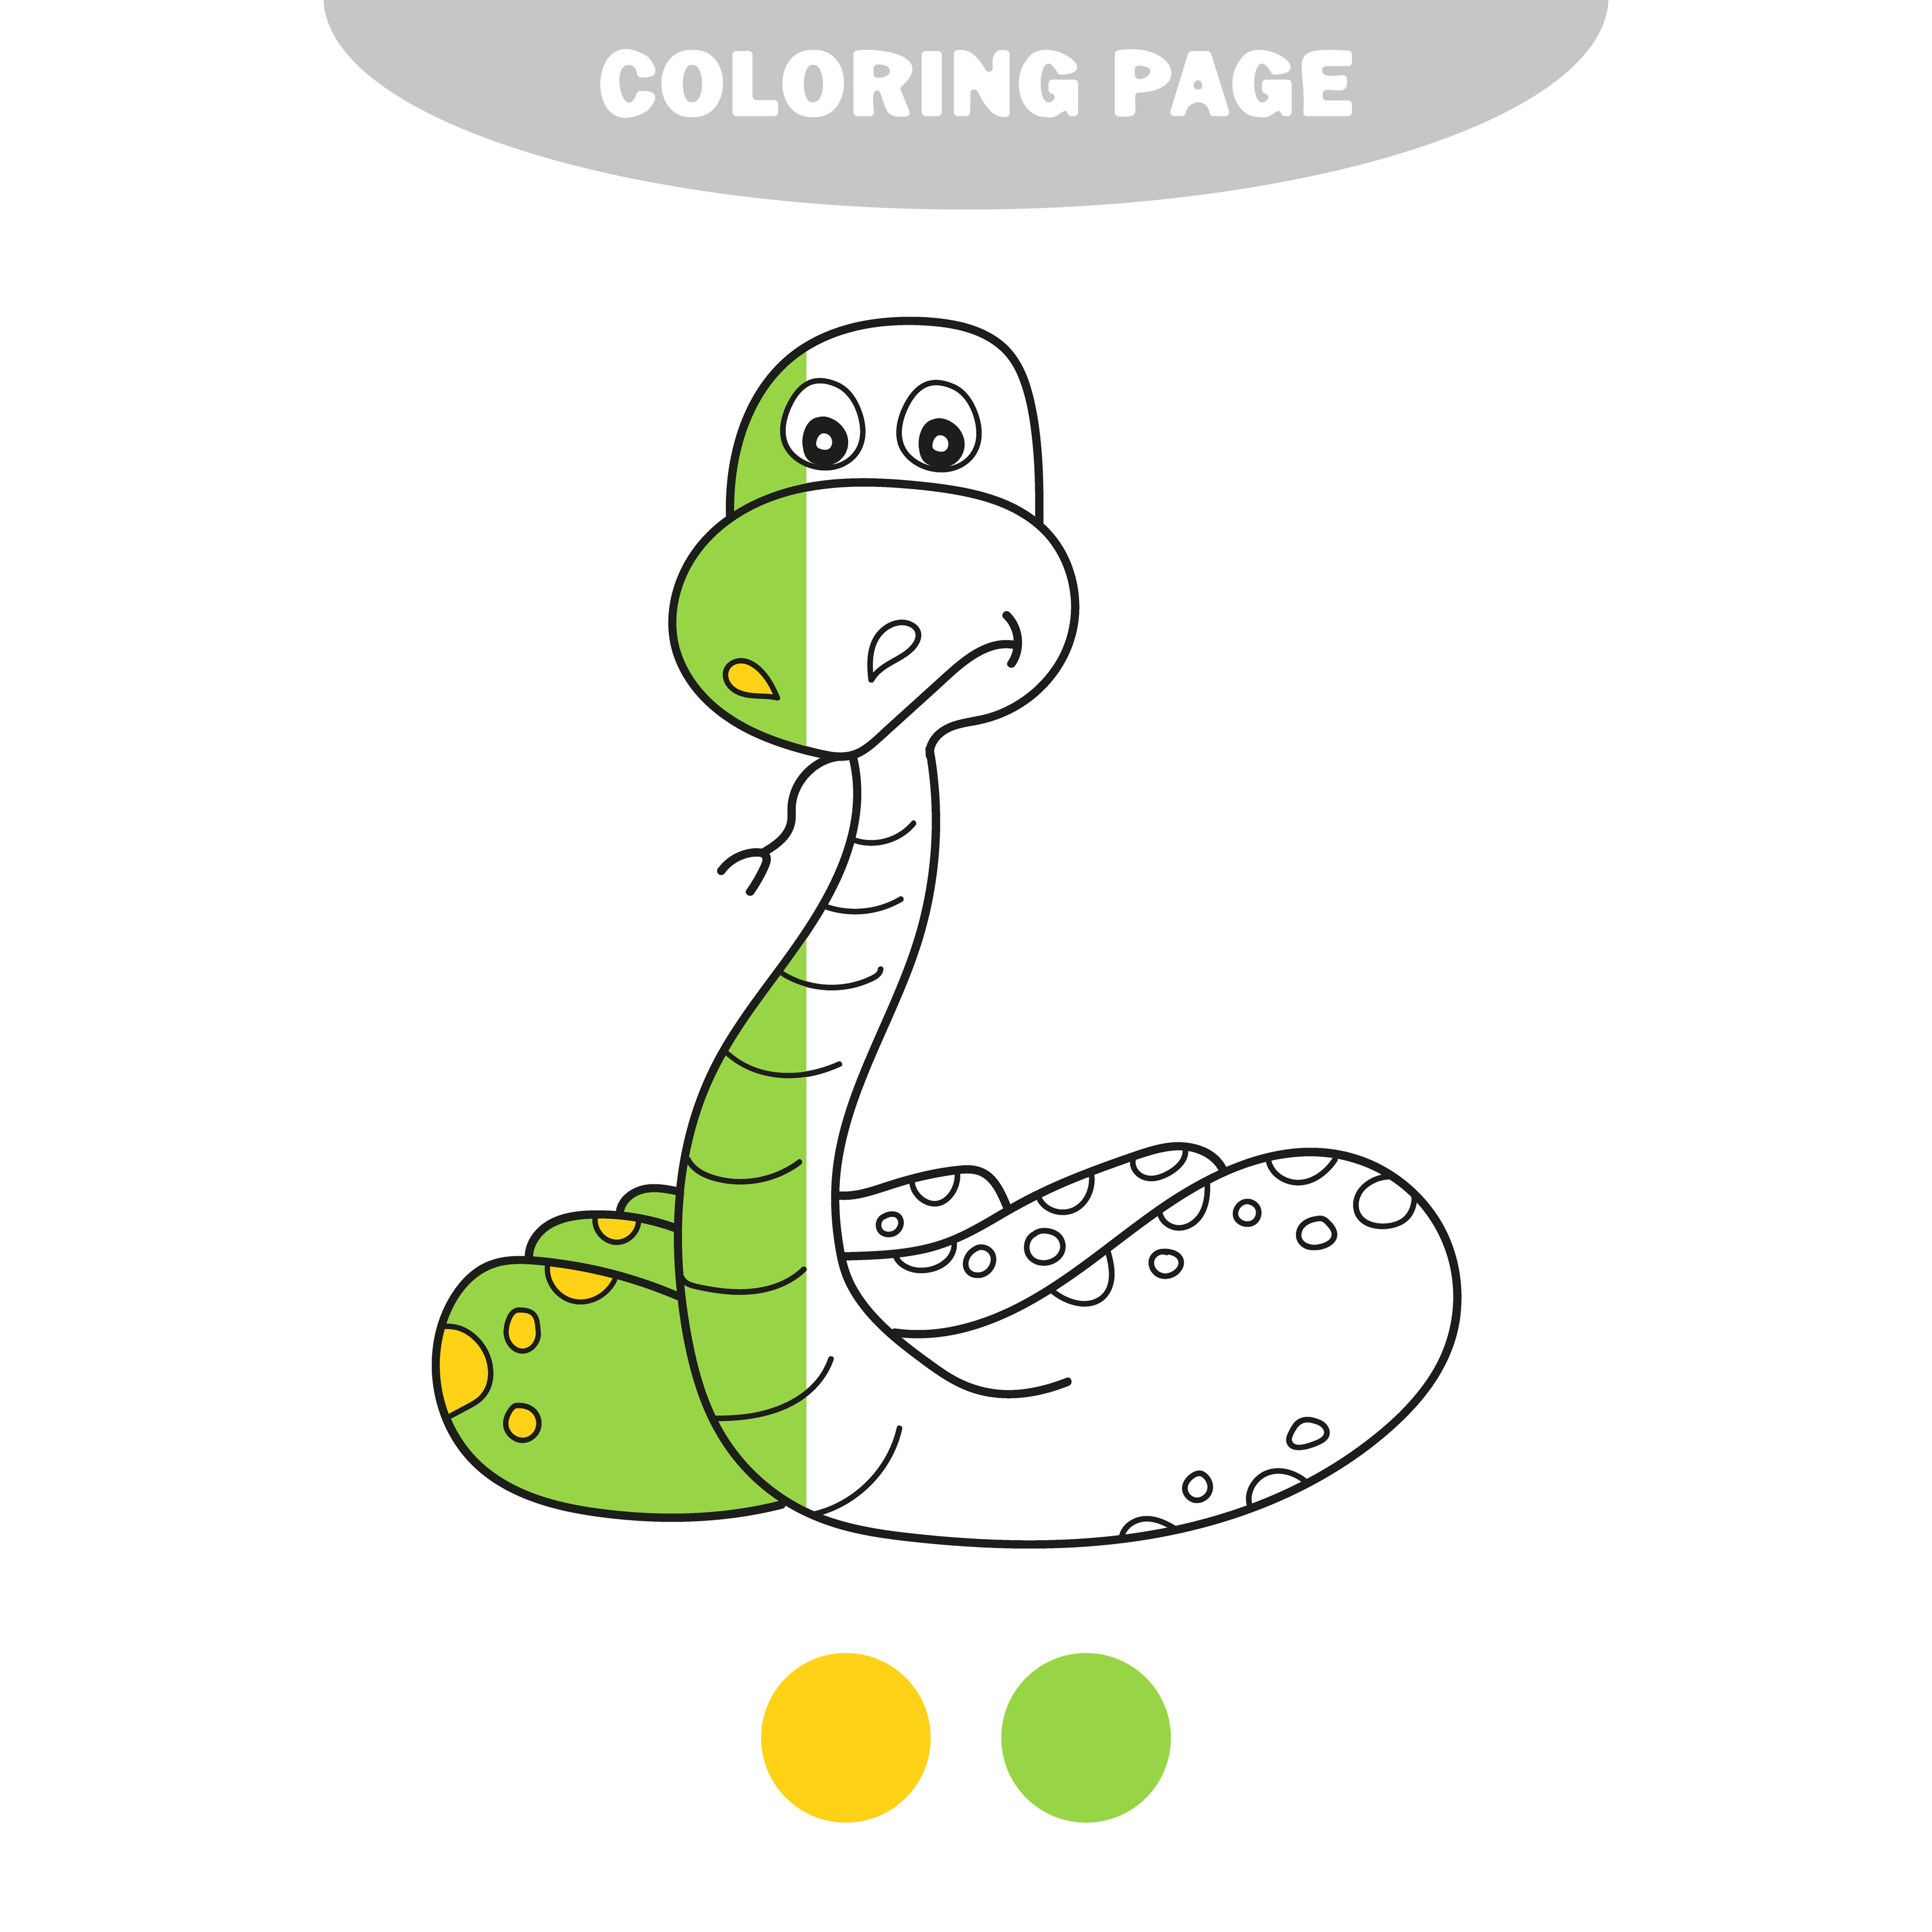 Cobra : Desenhos para colorir, Jogos gratuitos para crianças